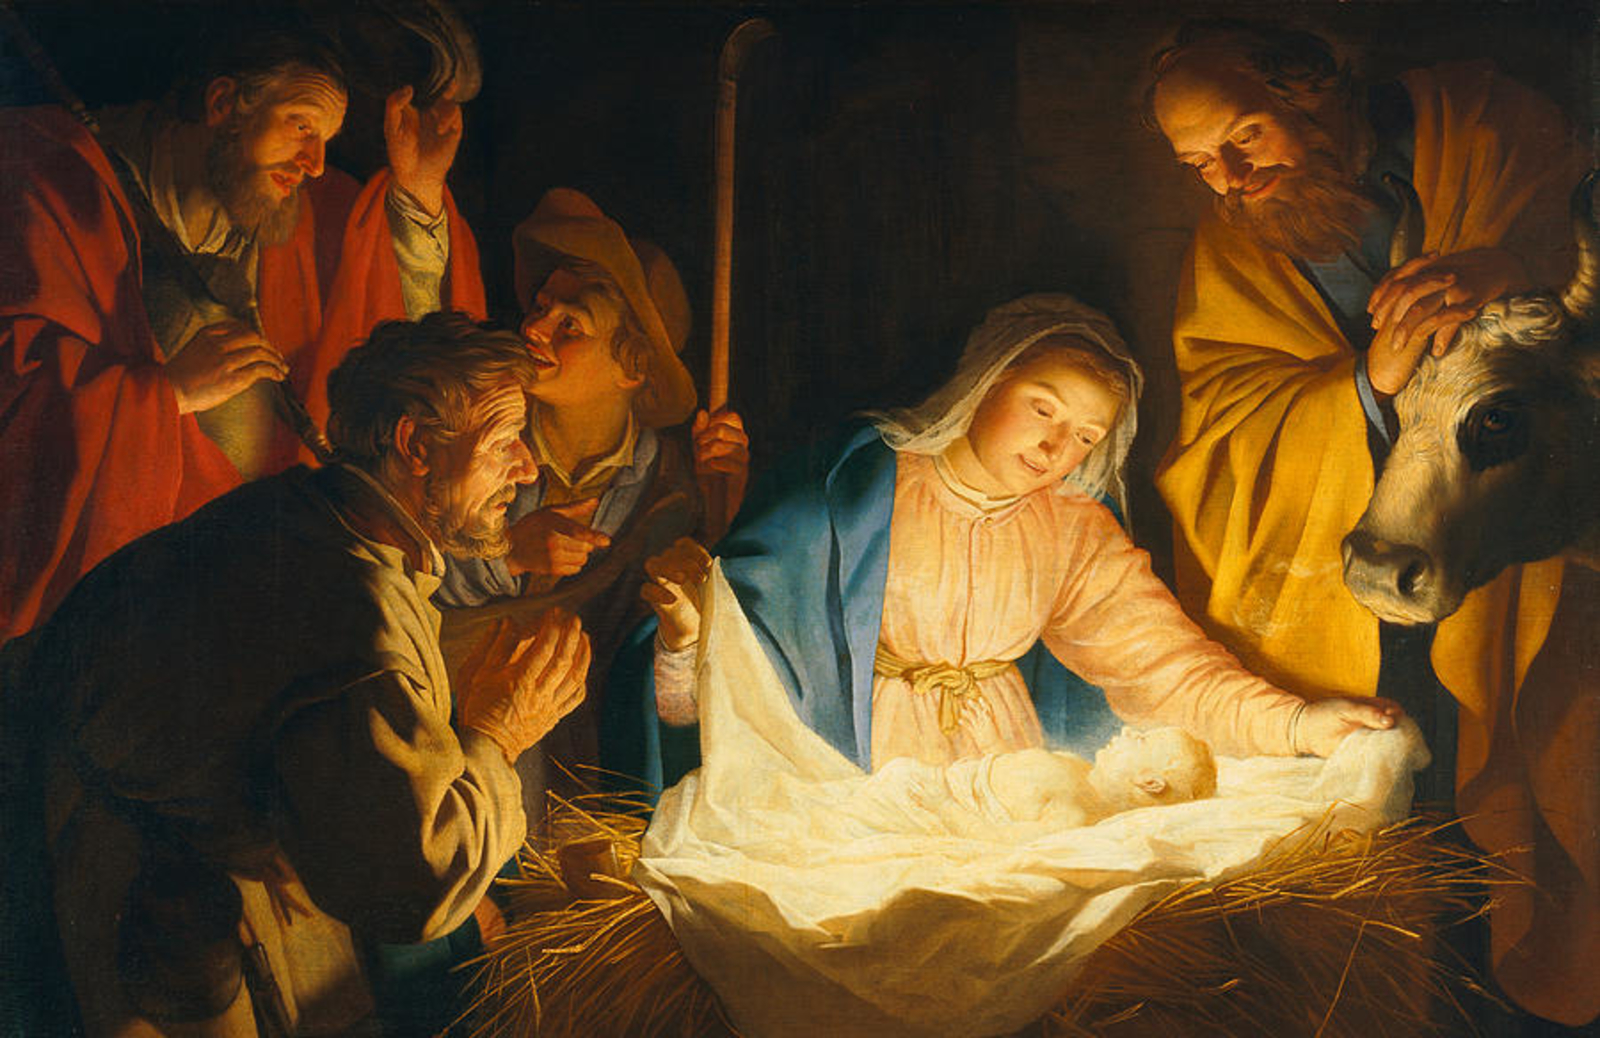 نافع شابو .. ميلاد الرب يسوع المسيح، نور العالم